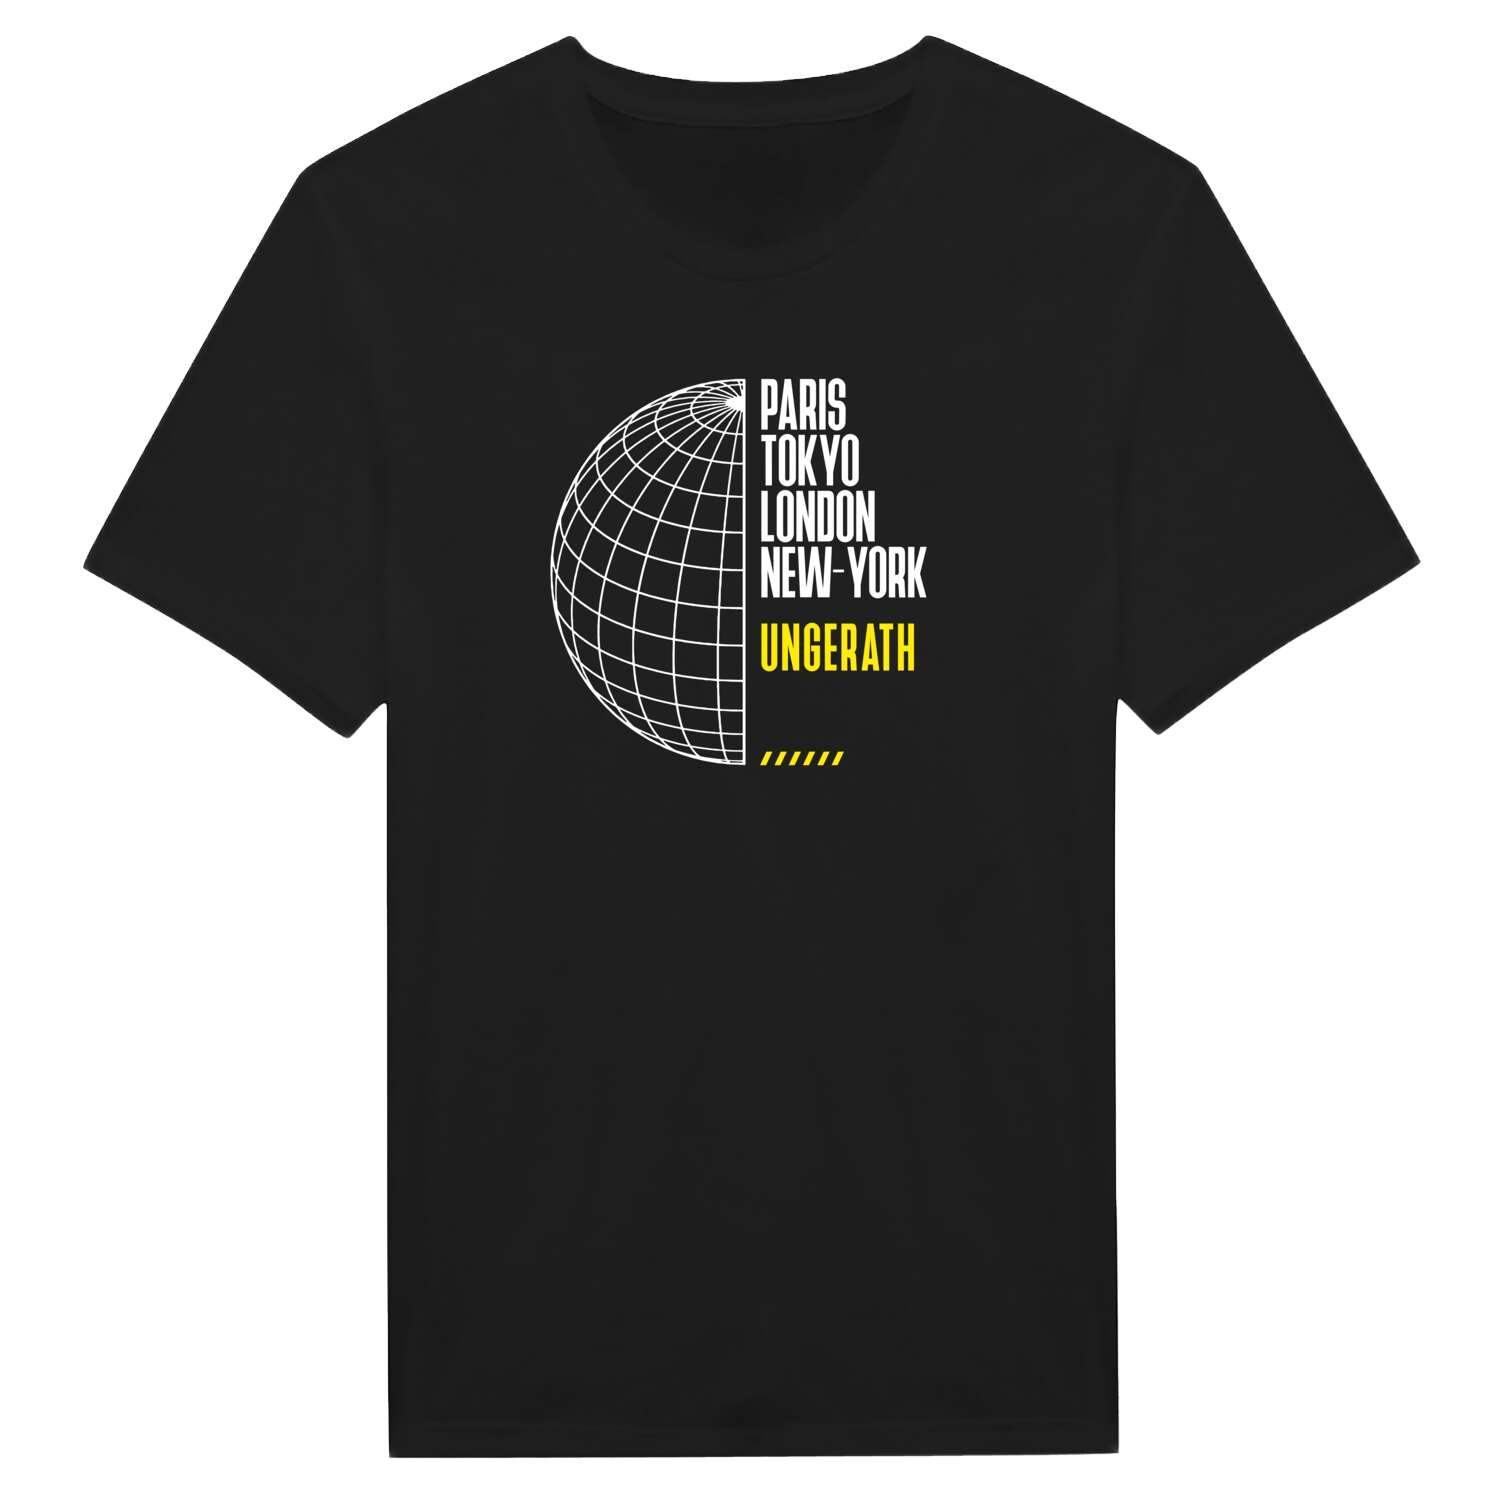 Ungerath T-Shirt »Paris Tokyo London«